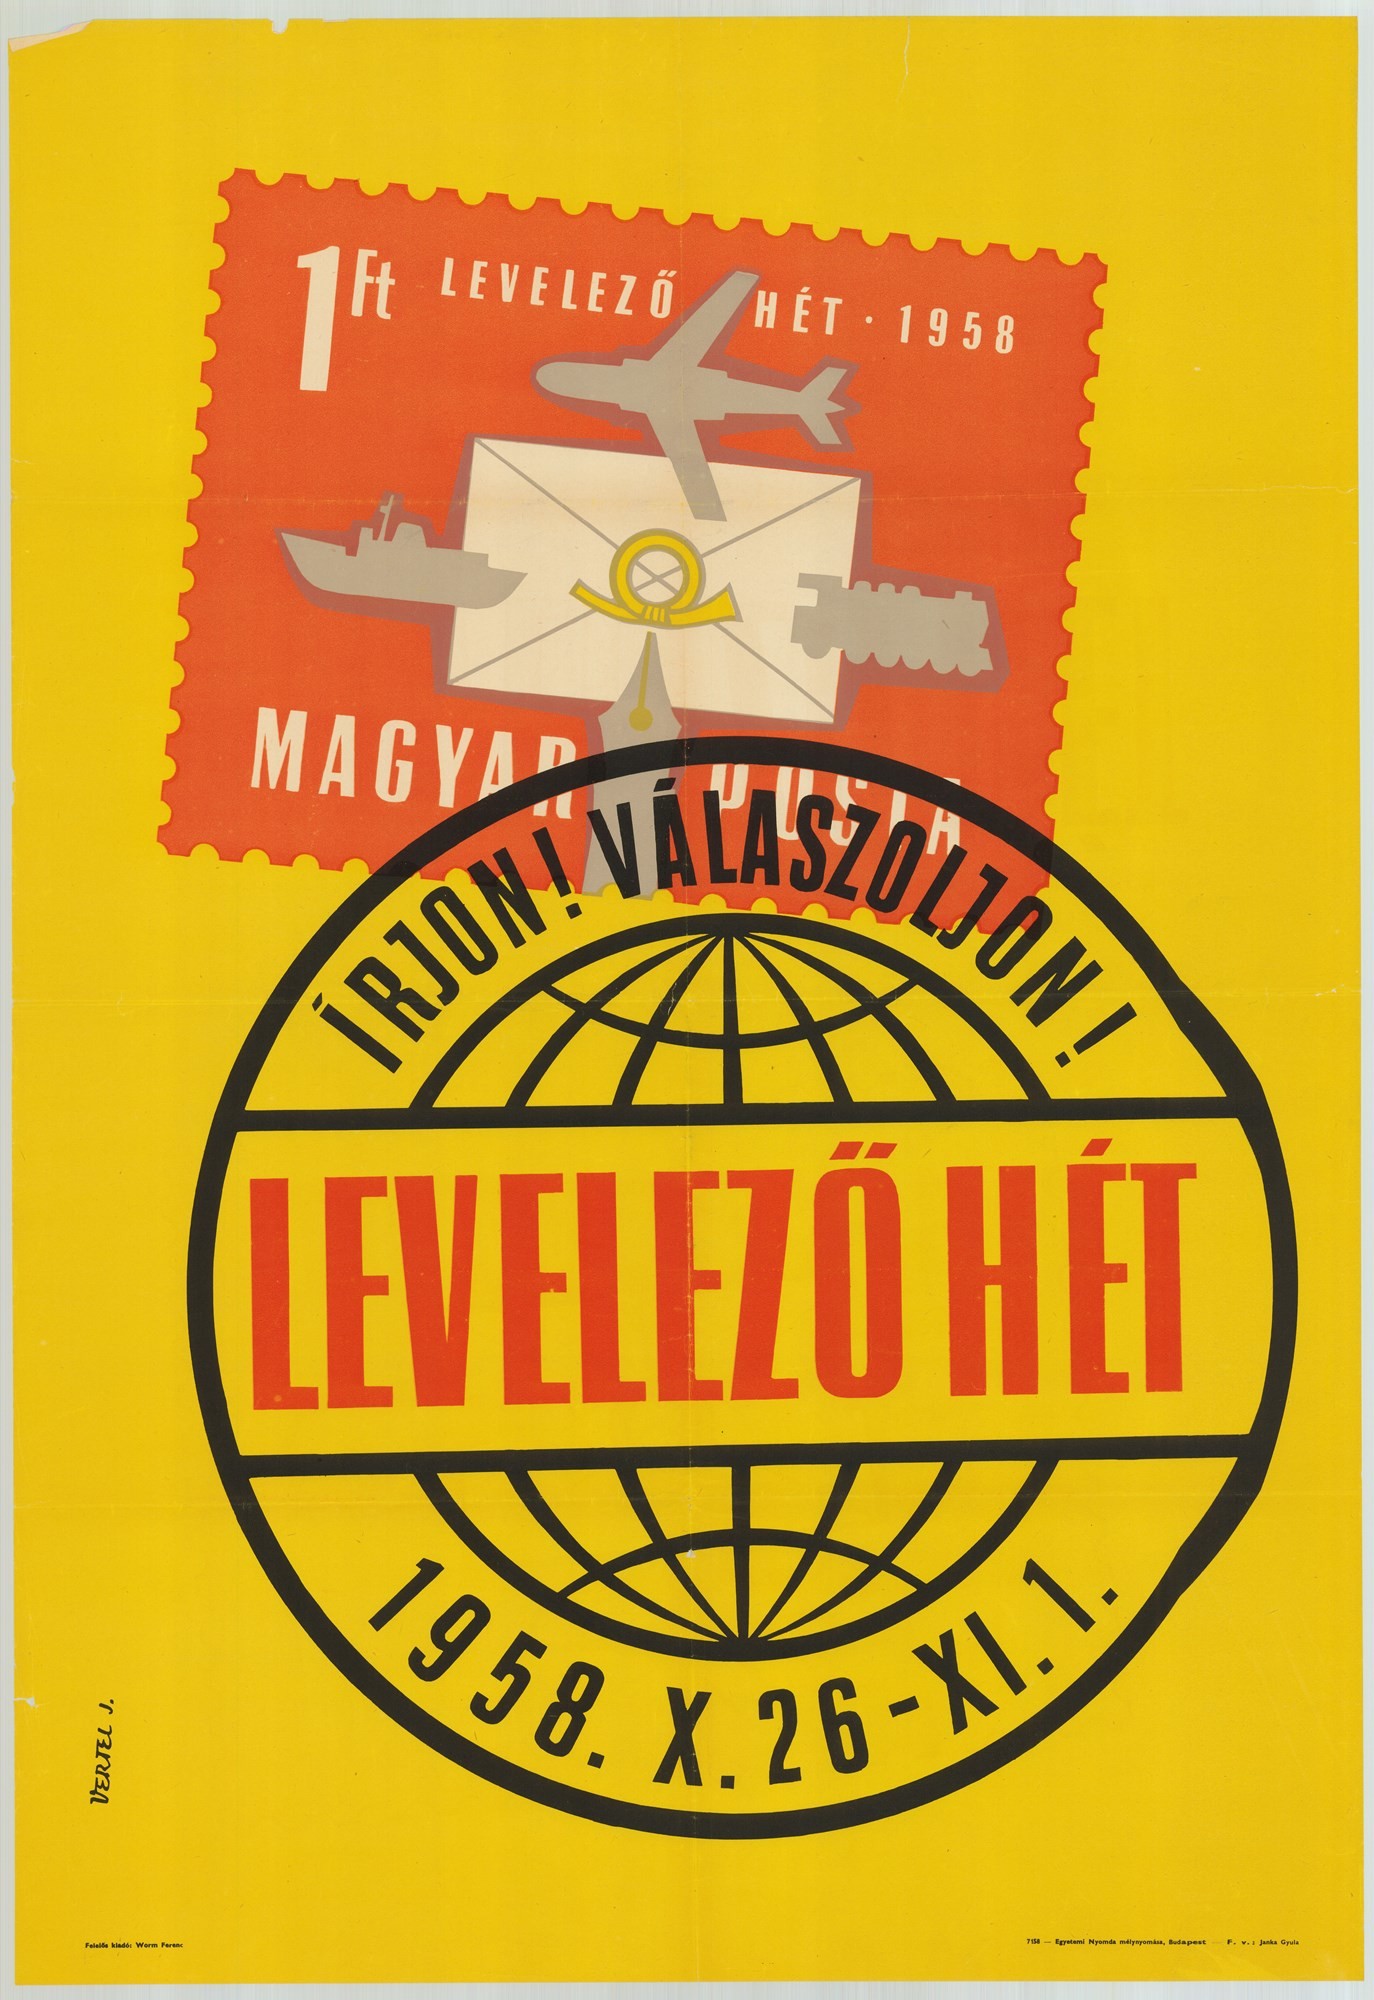 Levelező hét, 1958 - Plakát (Postamúzeum CC BY-NC-SA)